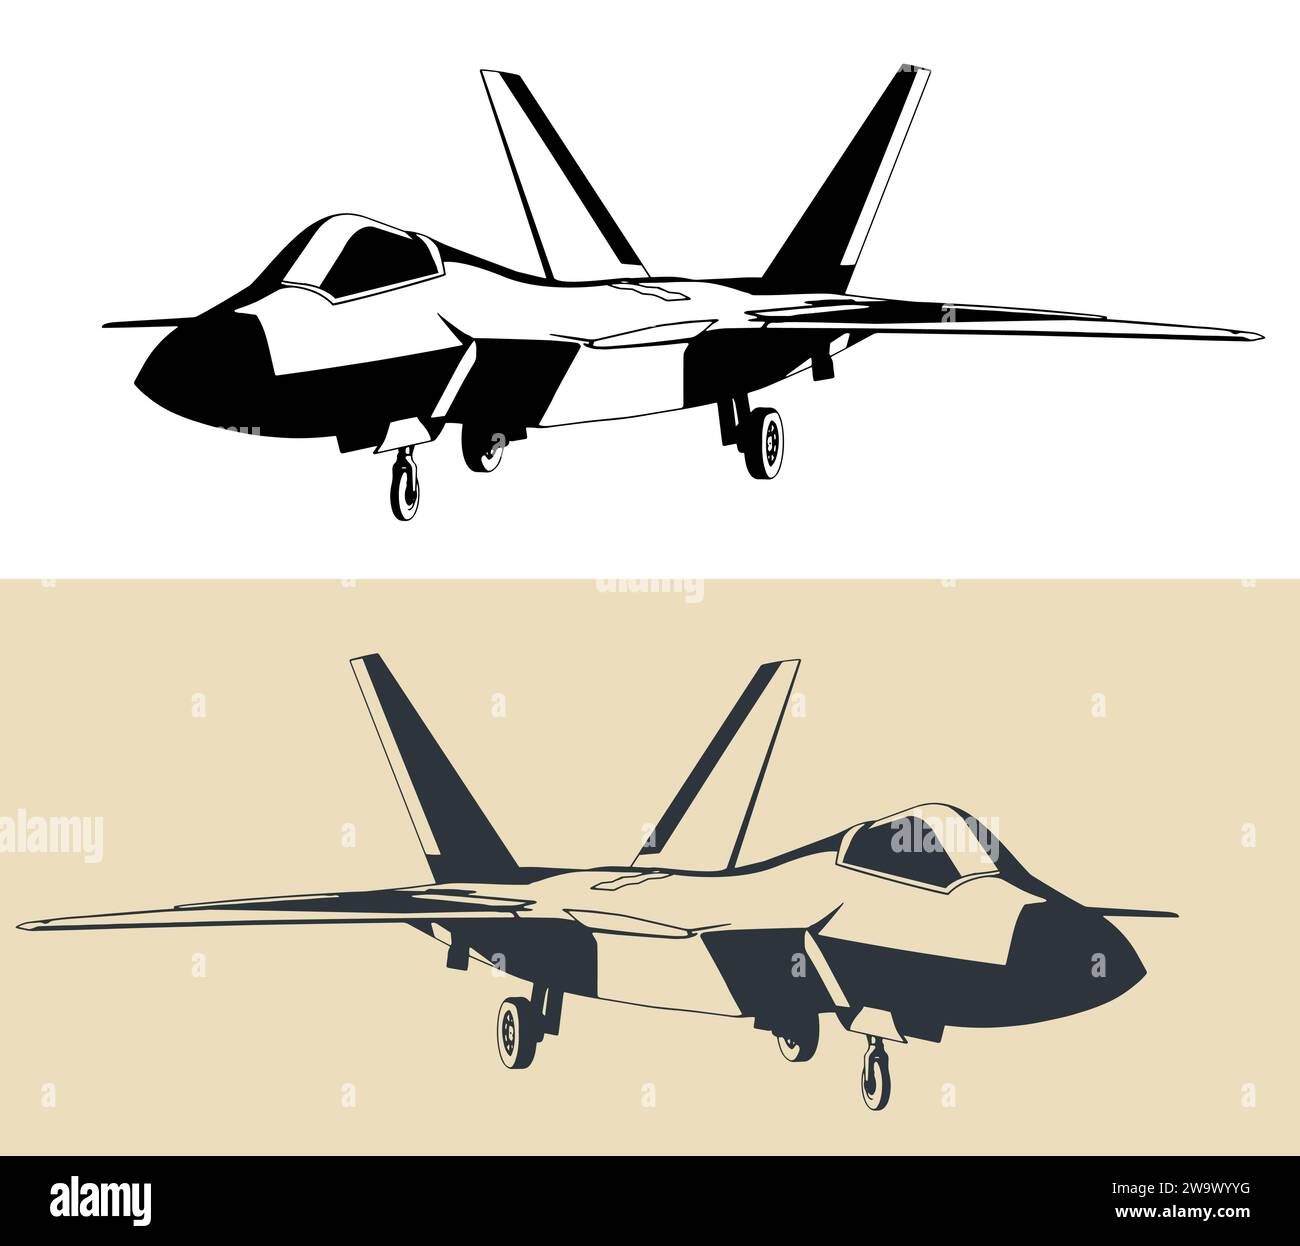 Disegno stilizzato di un moderno aereo militare F-22 Raptor. Caccia stealth Illustrazione Vettoriale